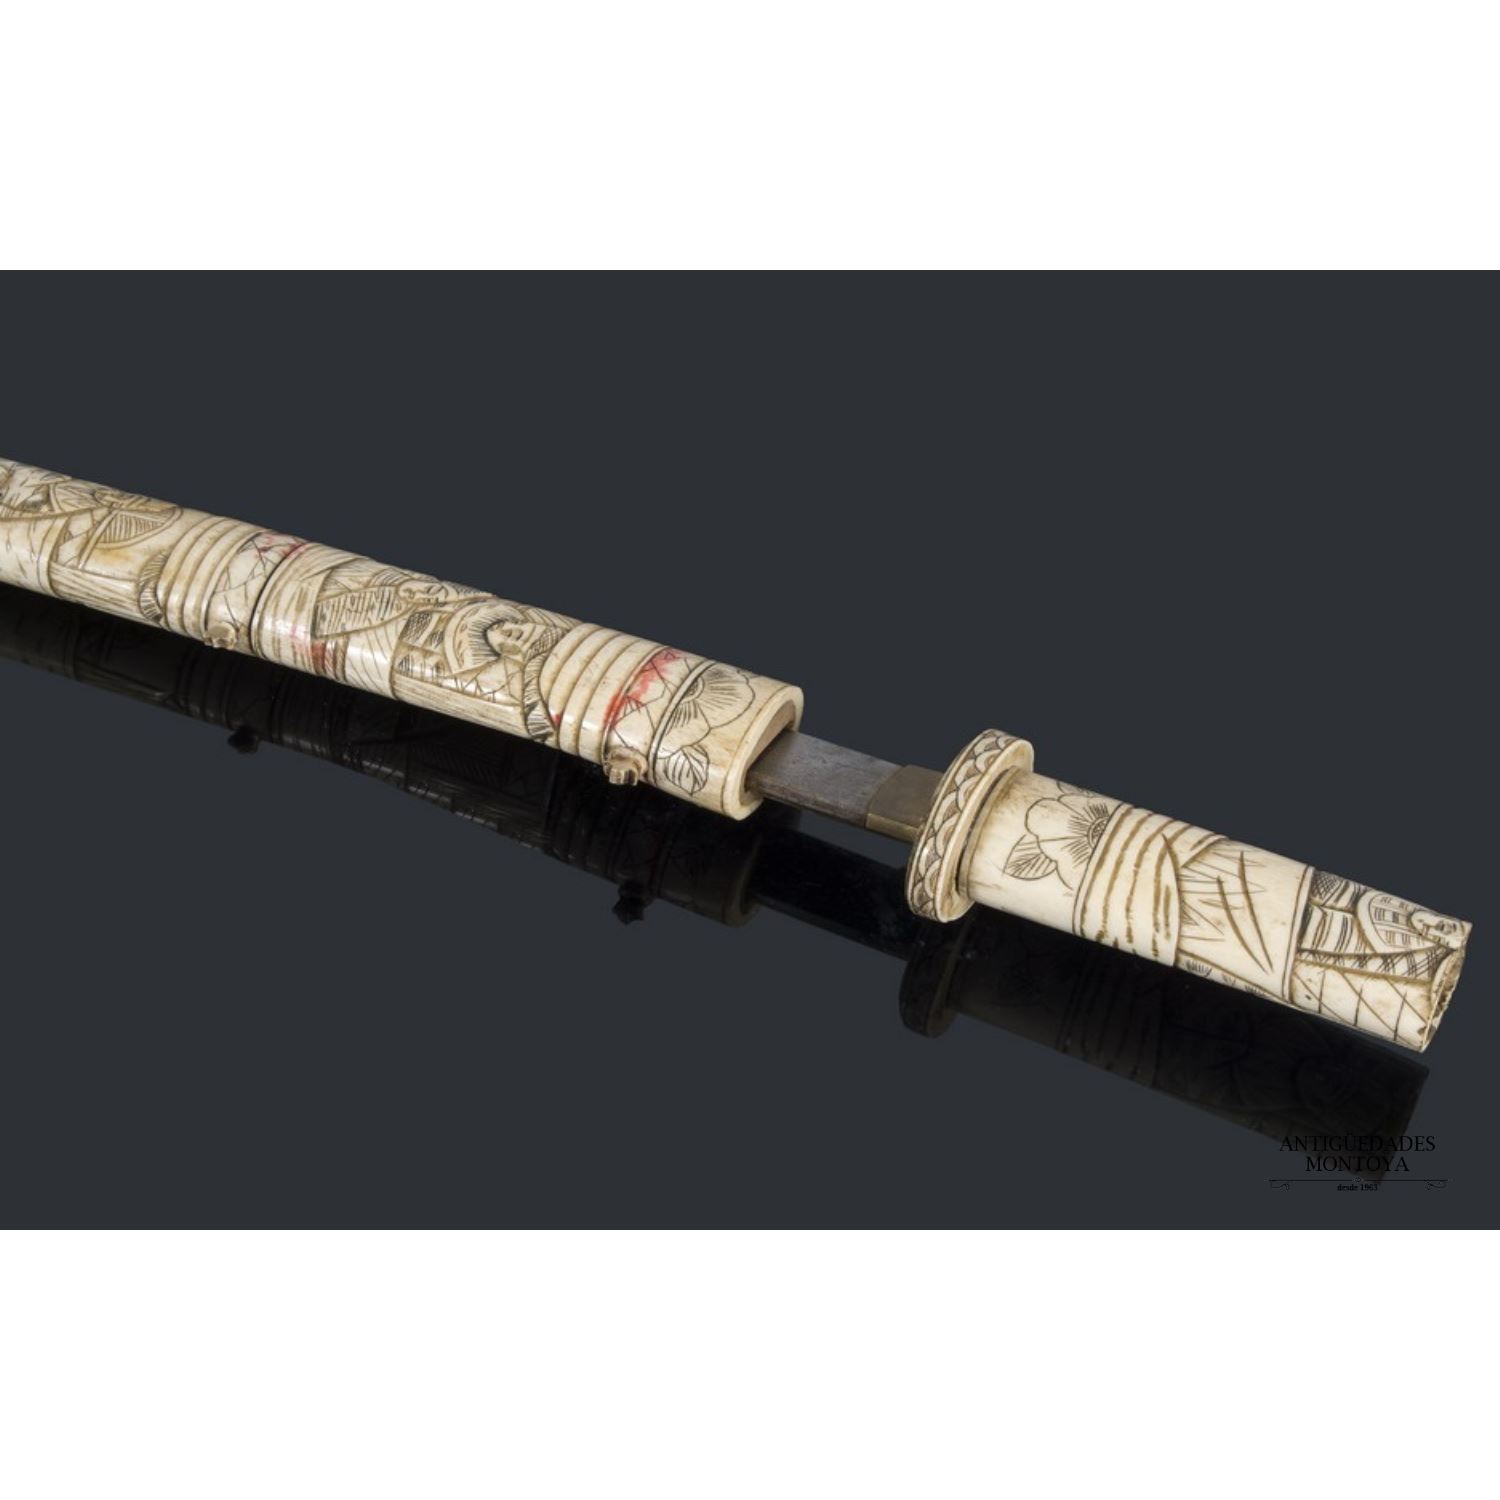 Oriental sword, early S.XX